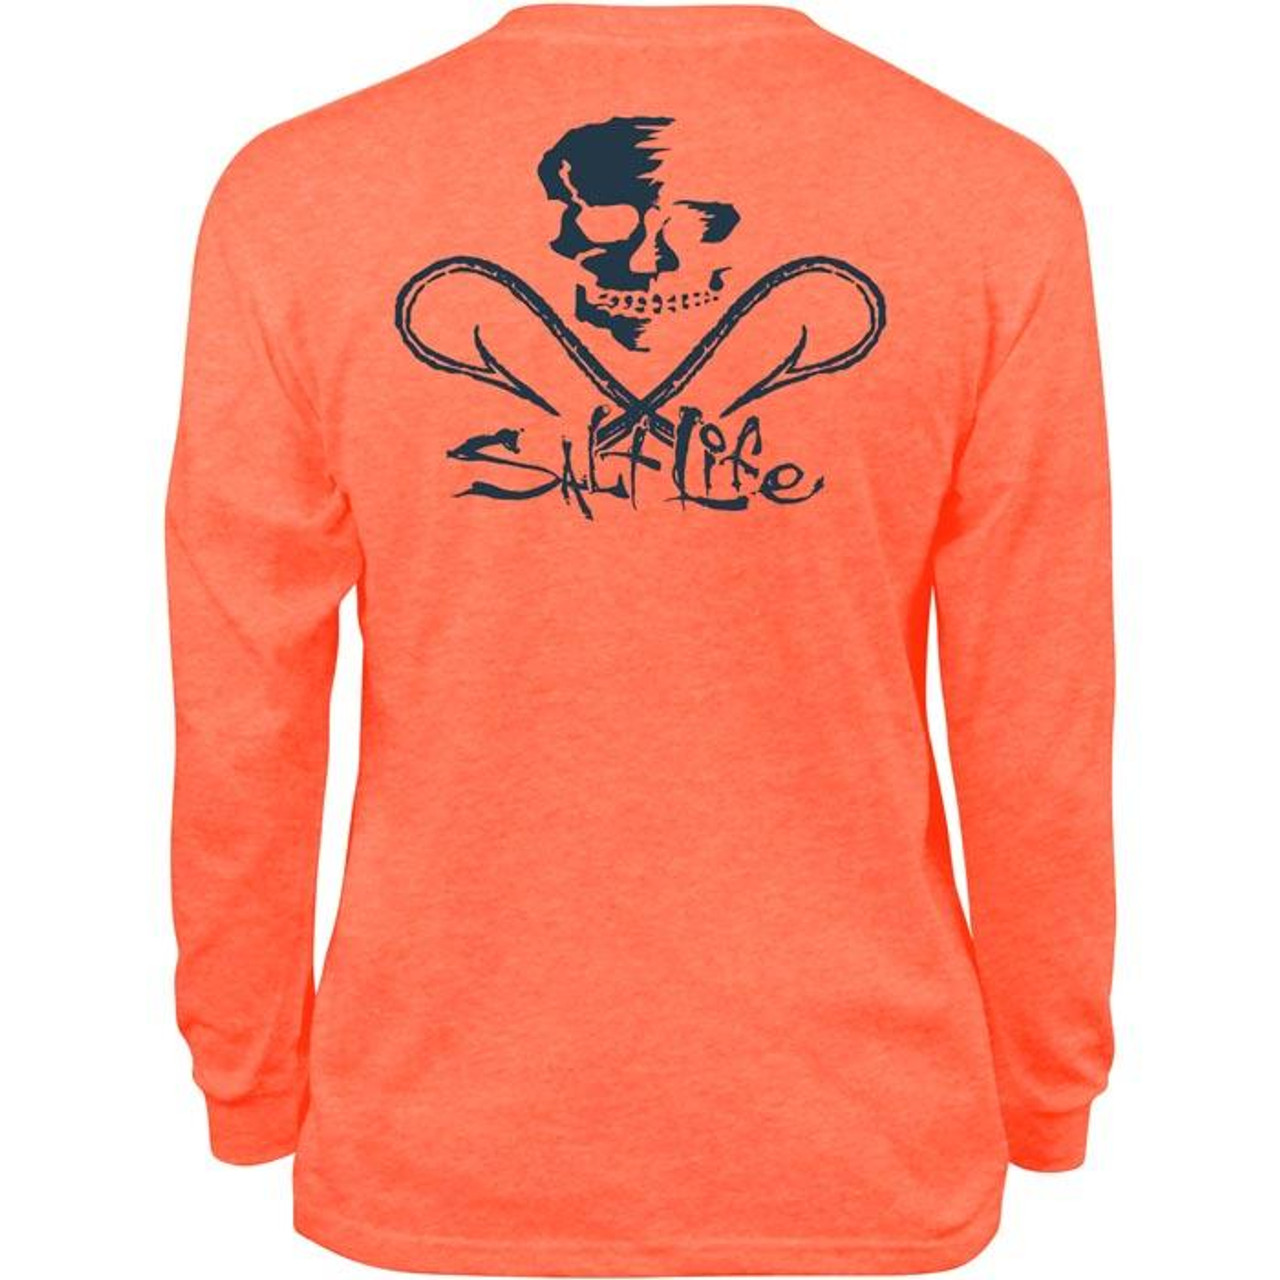 Youth Skull & Hooks Long Sleeve Orange T-Shirt - Coastal Cottage